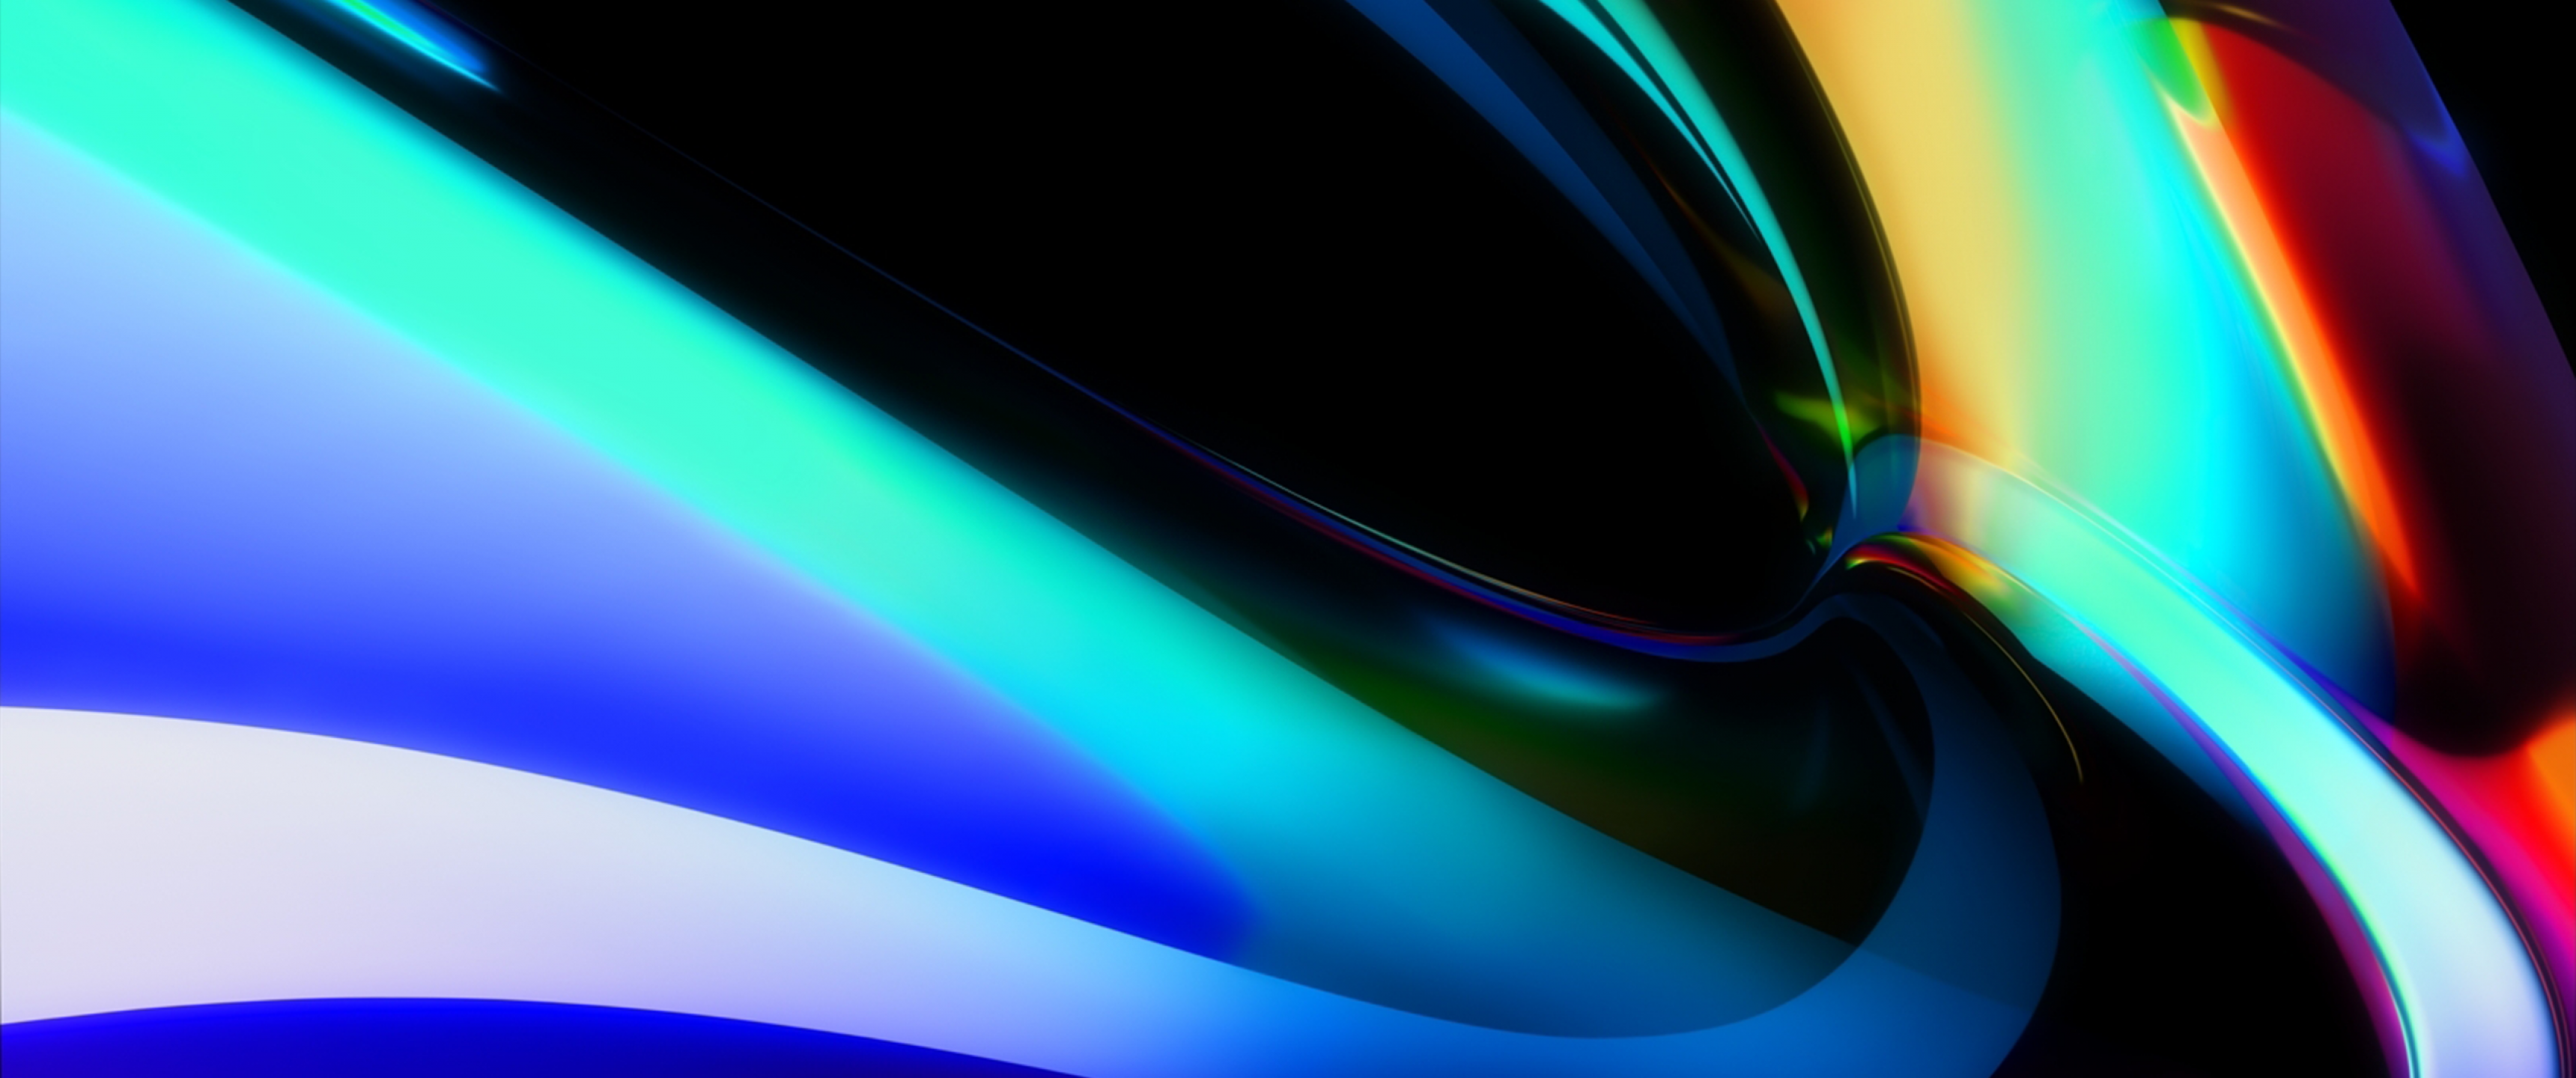 Hình nền MacBook Pro 4K đầy màu sắc sẽ khiến cho màn hình của bạn trở nên sinh động hơn rất nhiều. Với độ phân giải 4K tuyệt vời, bạn sẽ được khám phá những chi tiết tinh tế của bức tranh màu sắc đầy tươi vui này.